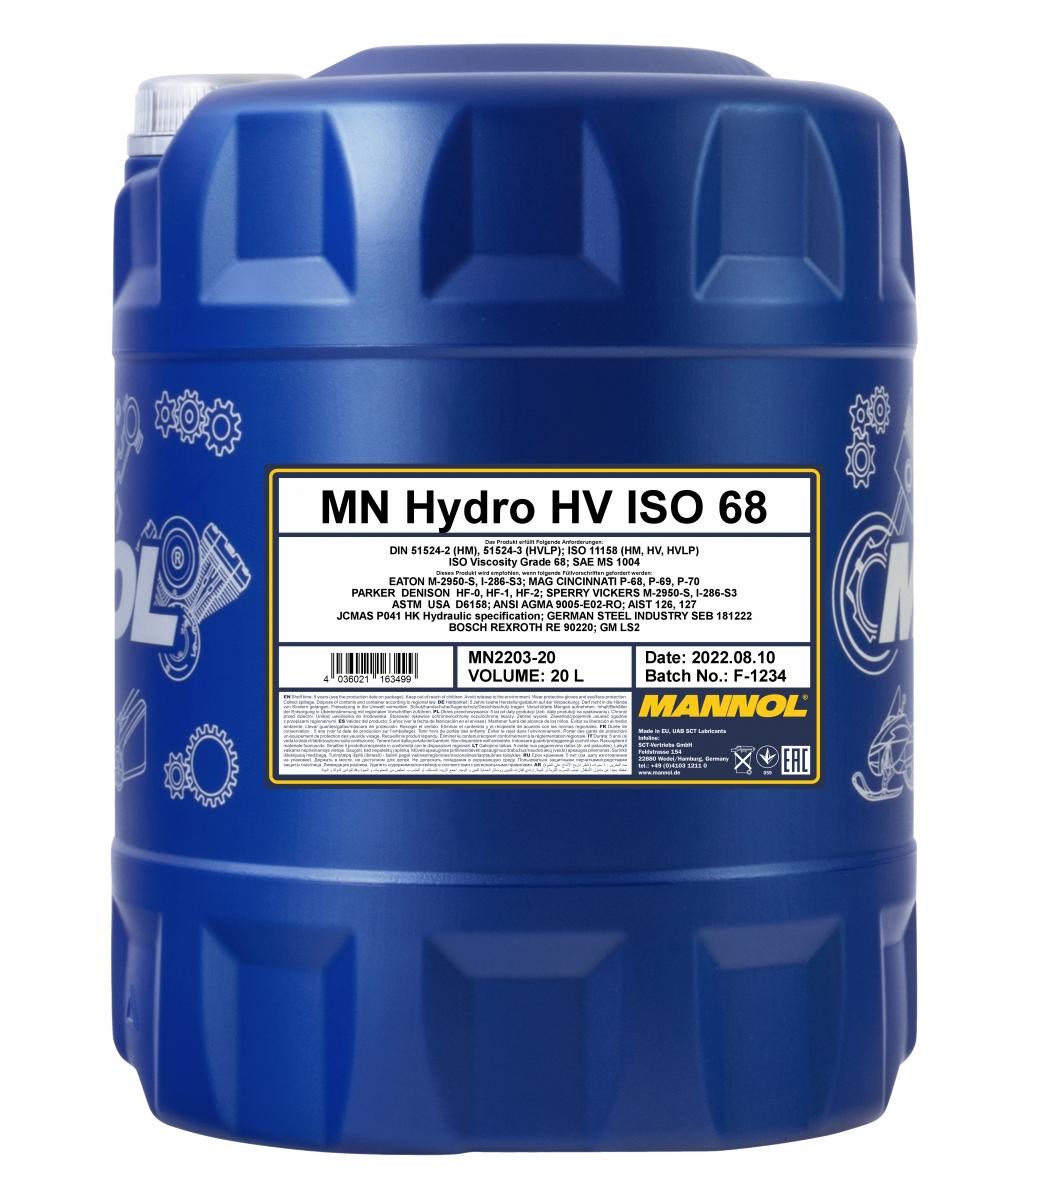 MANNOL HYDRO HV ISO 68 MN2203-20 Central Hydraulic Oil